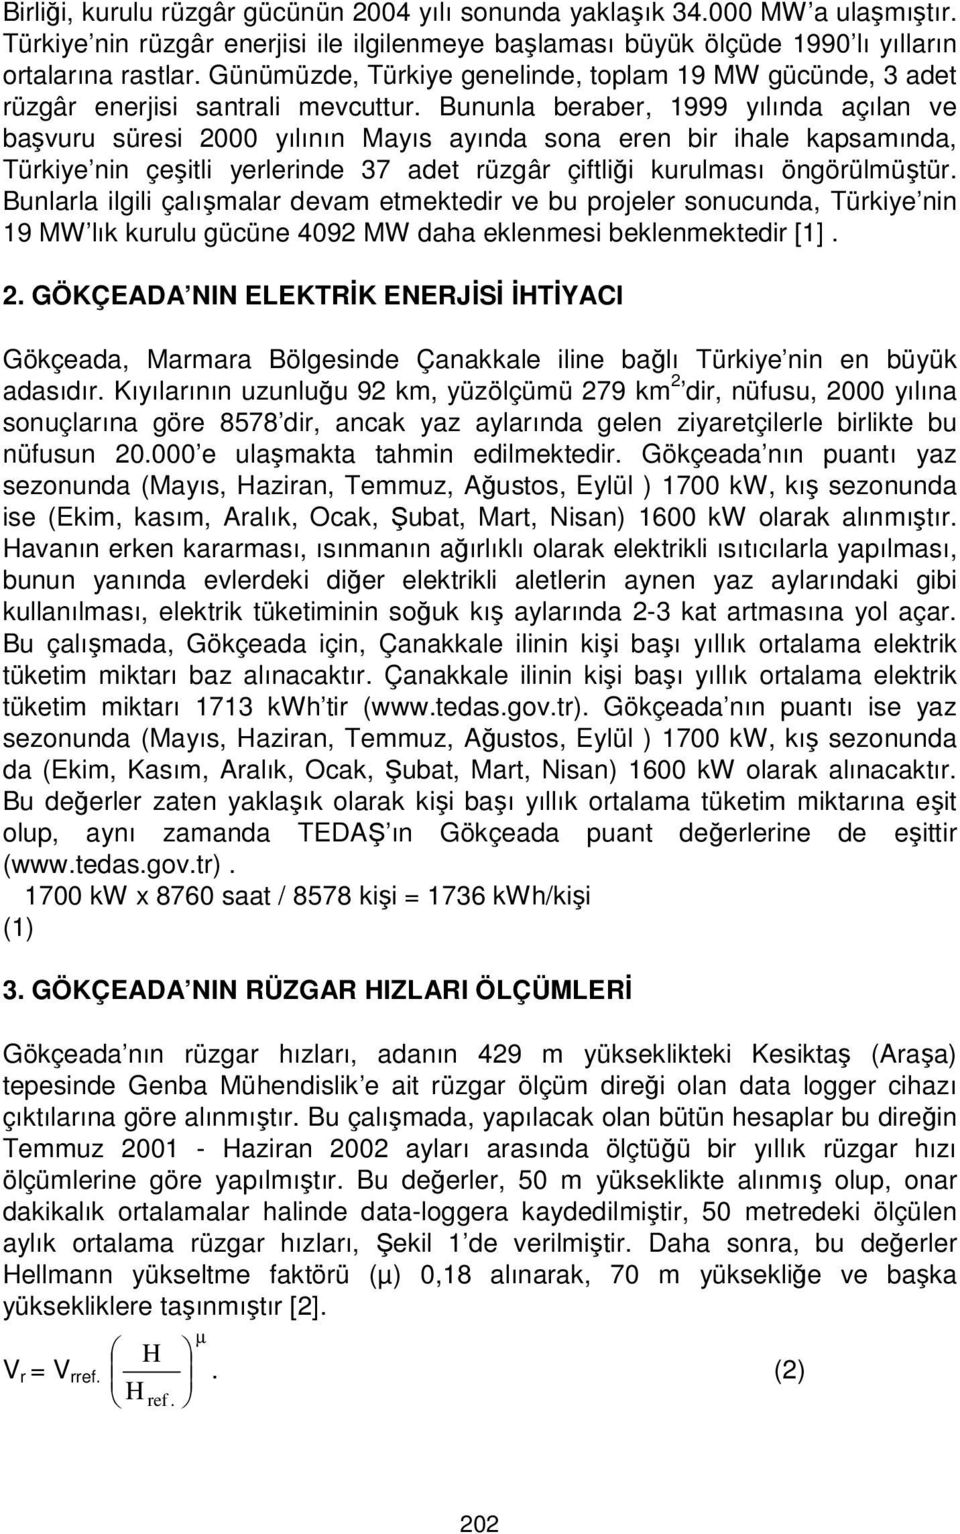 Bununla beraber, 1999 yılında açılan ve başvuru süresi 2000 yılının Mayıs ayında sona eren bir ihale kapsamında, Türkiye nin çeşitli yerlerinde 37 adet rüzgâr çiftliği kurulması öngörülmüştür.